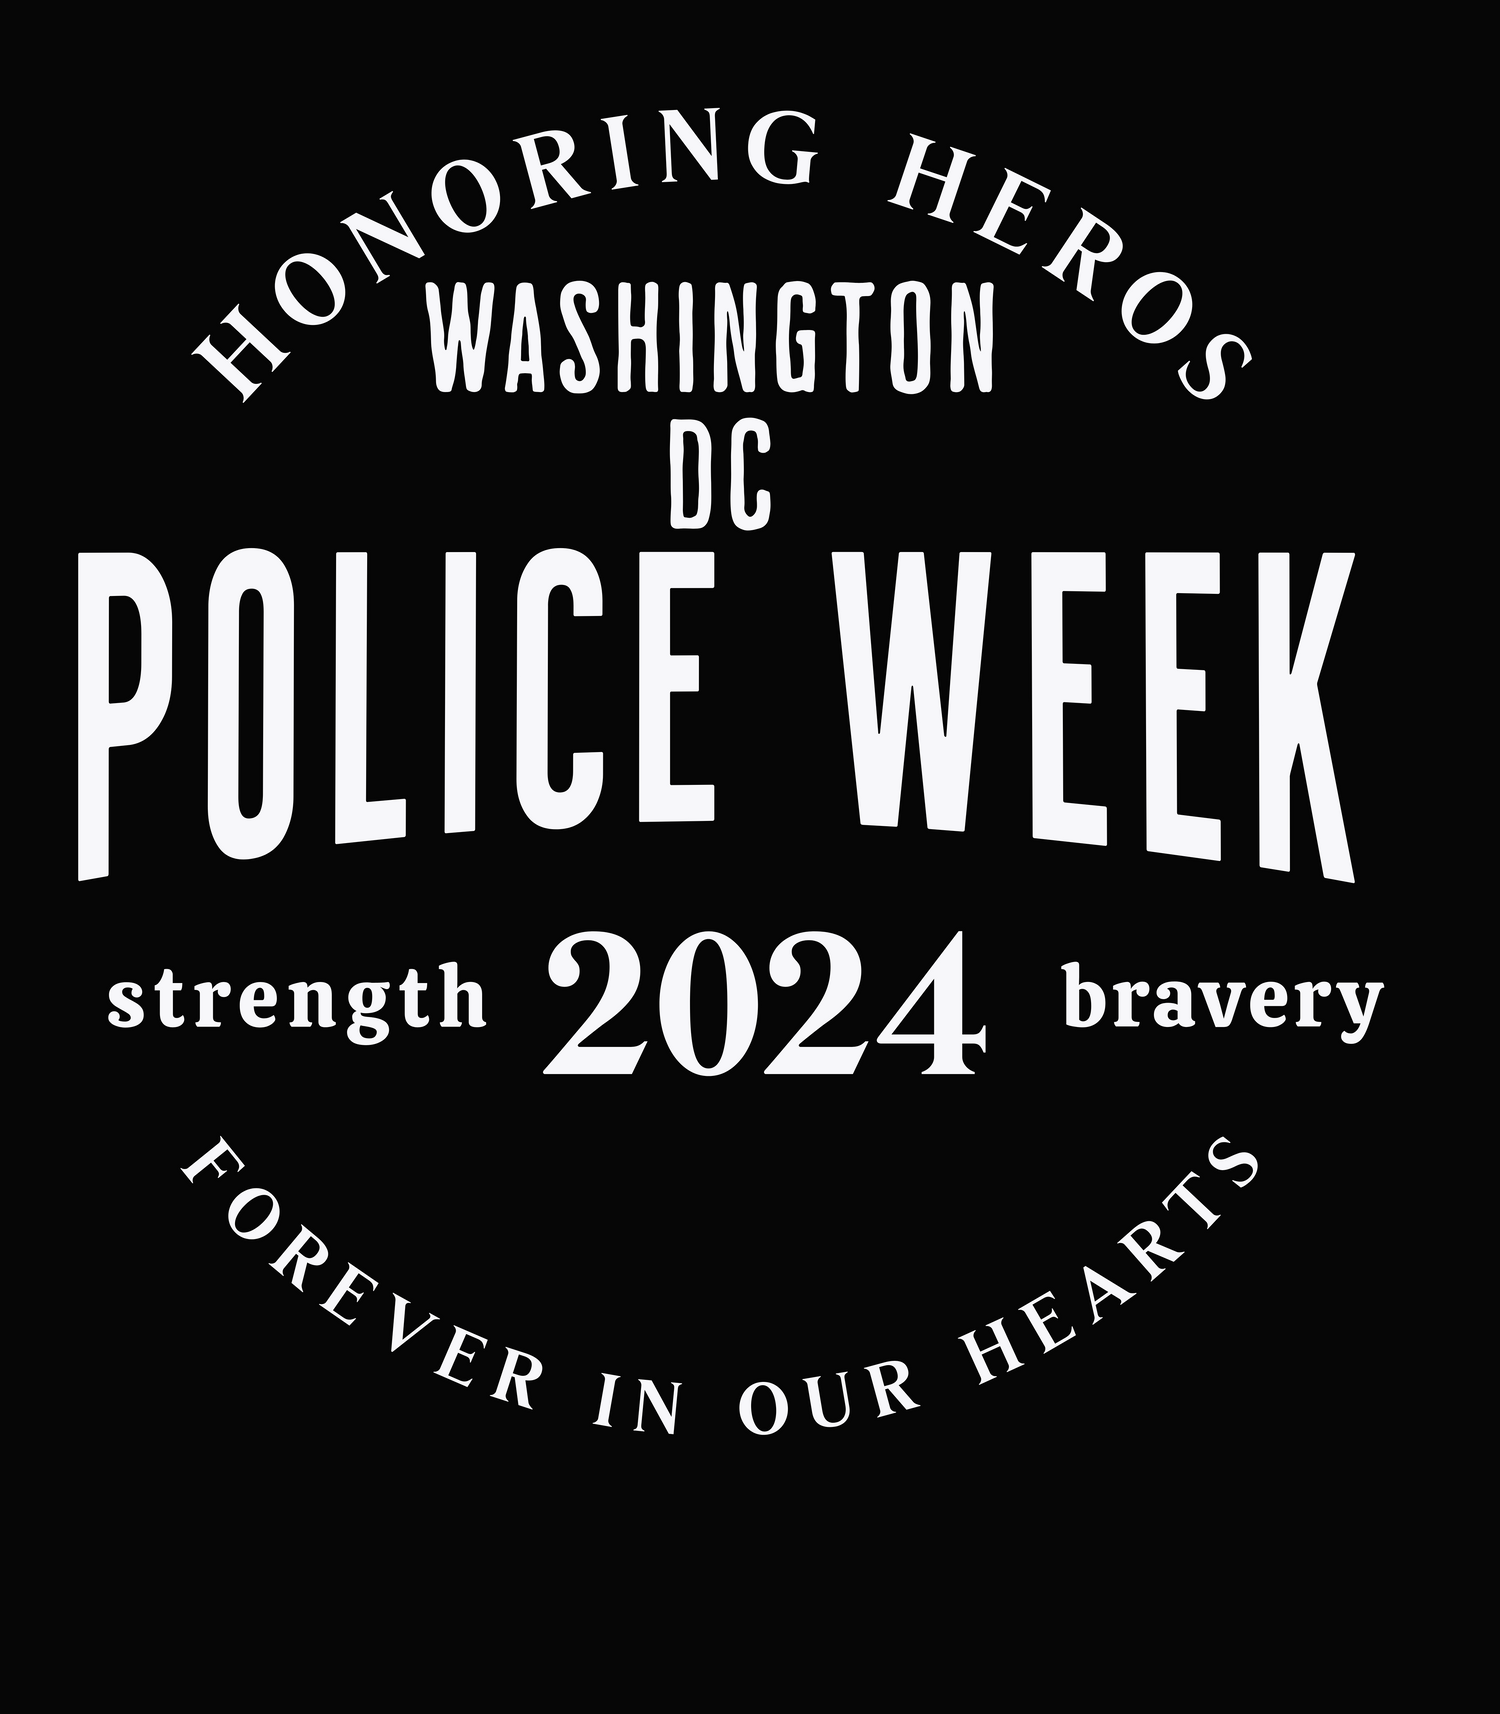 Police Week 2024